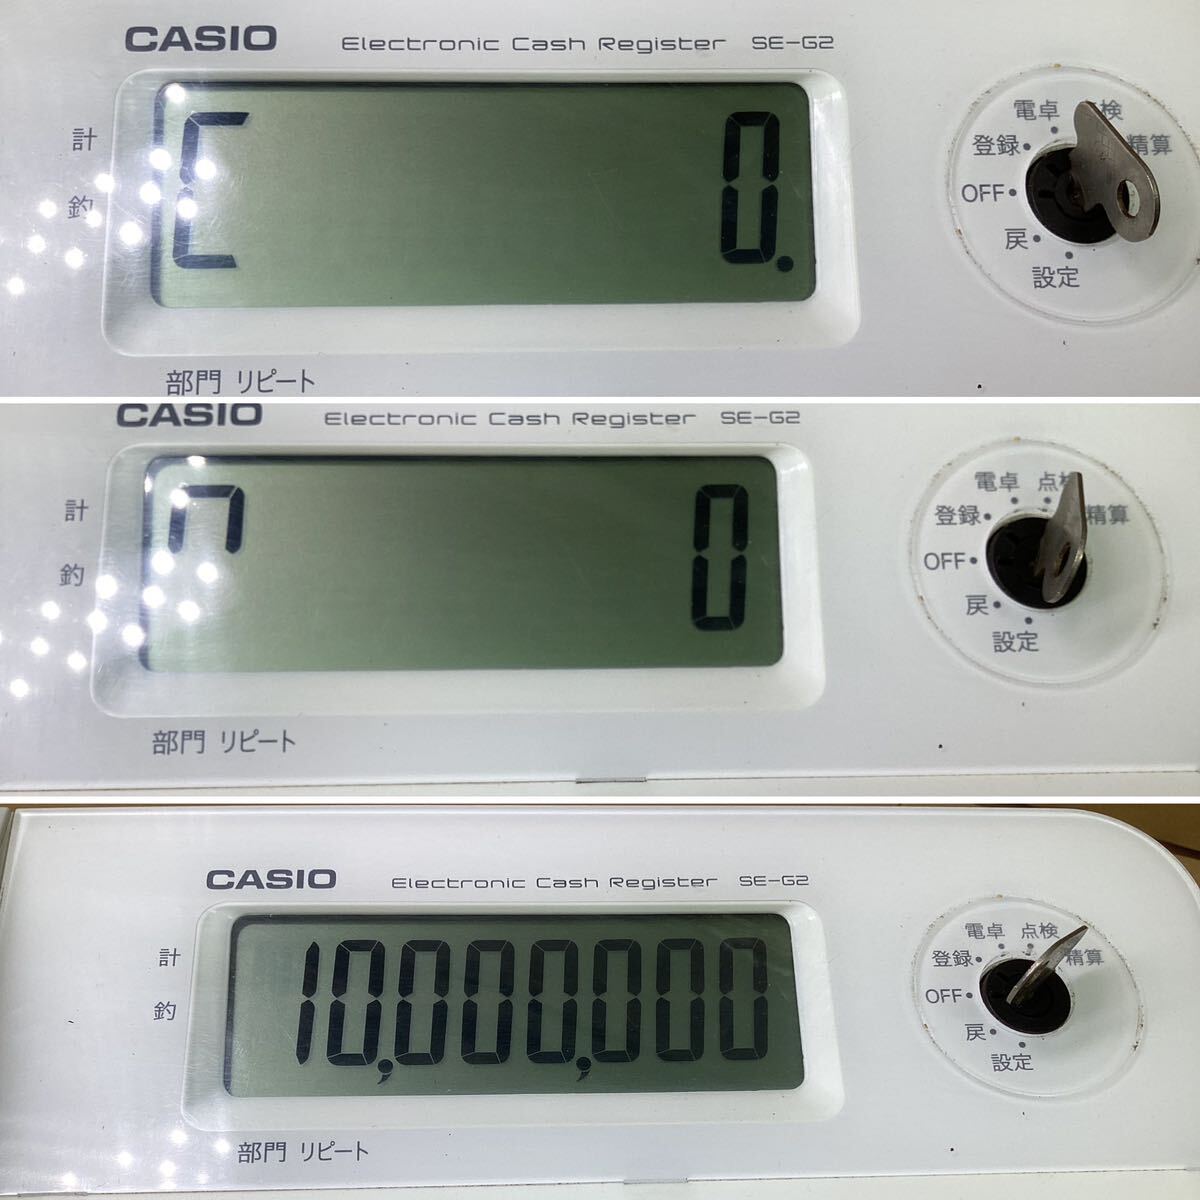 CASIO электронный резистор SE-G2-WE белый резистор reji товары для магазина Casio 